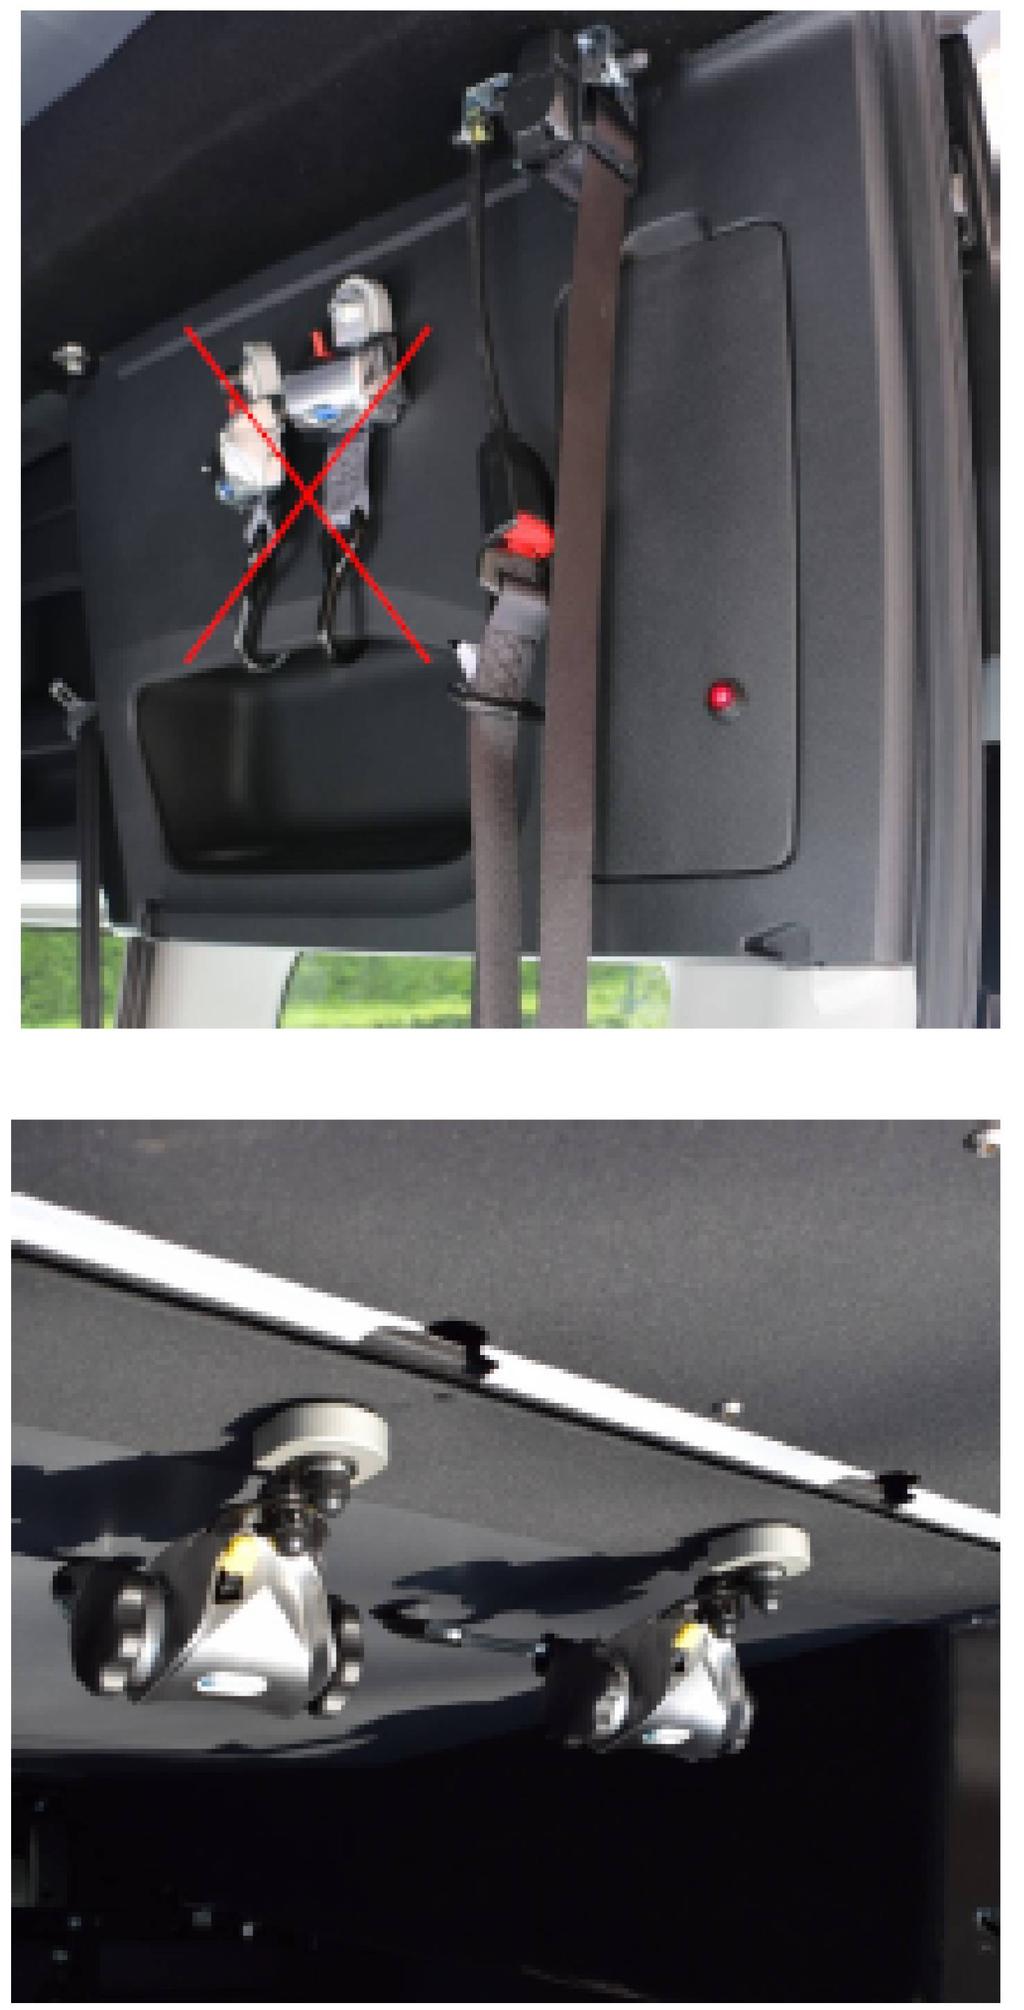 System pasów mocujących wózek System pasów do mocowania wózka składa się z 2 elektrycznie blokowanych pasów z przodu i 2 ręcznie dopinanych pasów z tyłu.